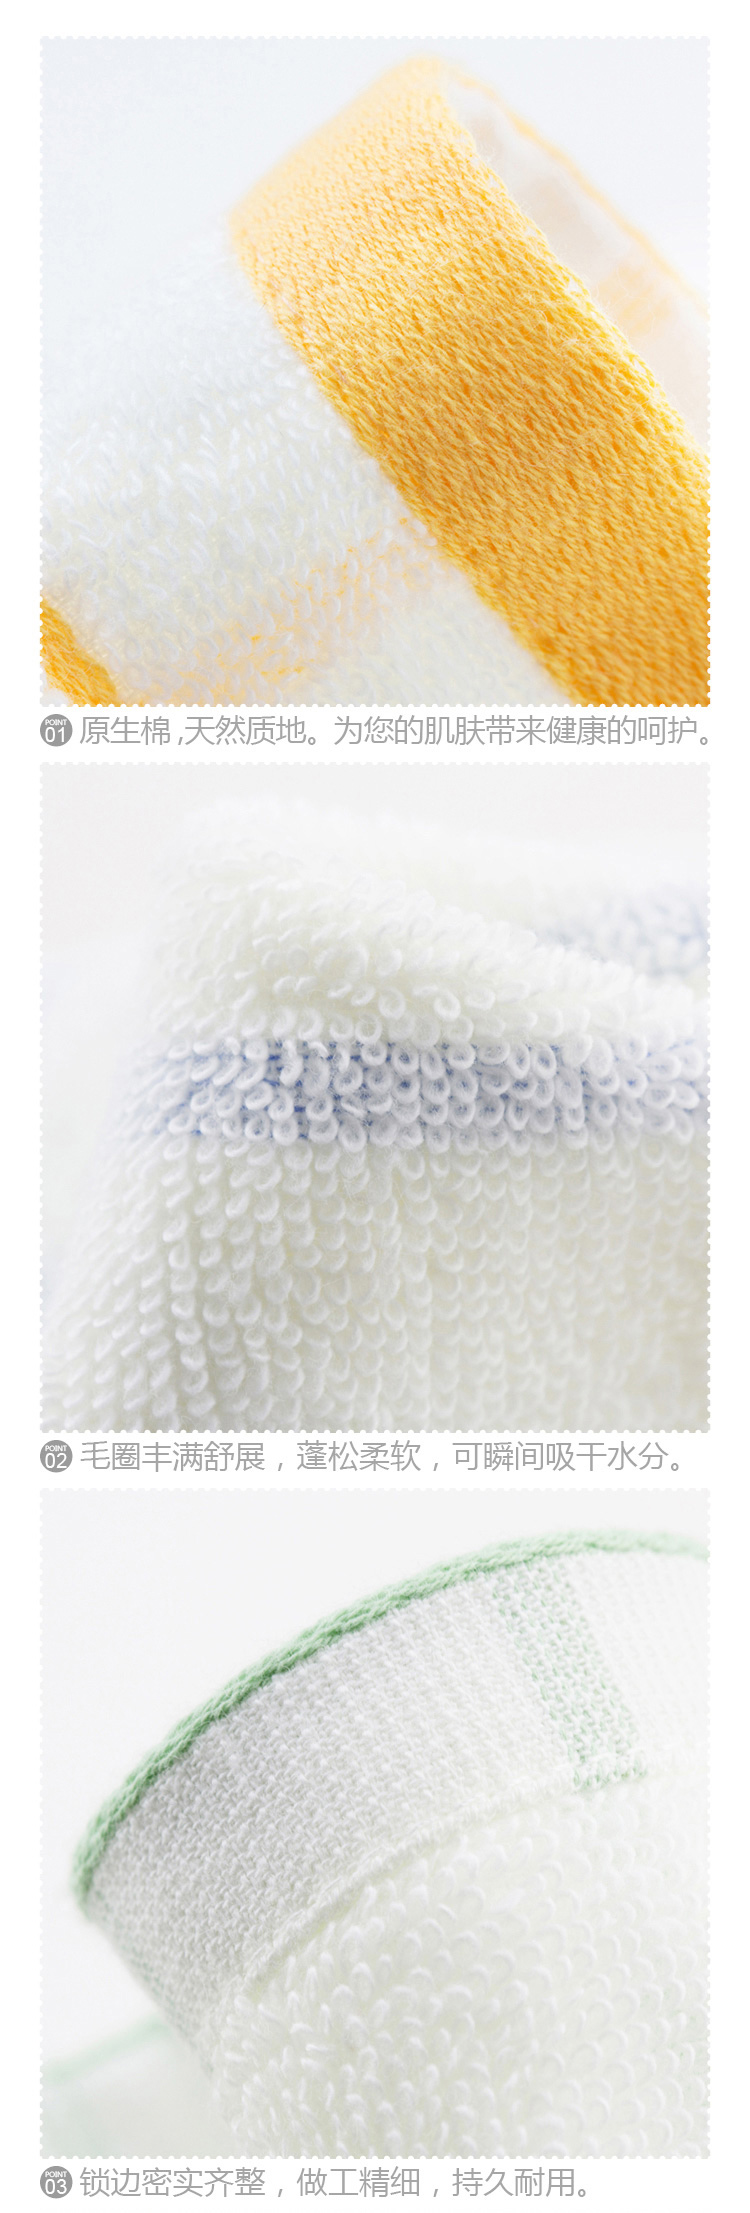 三利 纯棉横条缎档 竖条毛巾 蓝缎 33×70cm